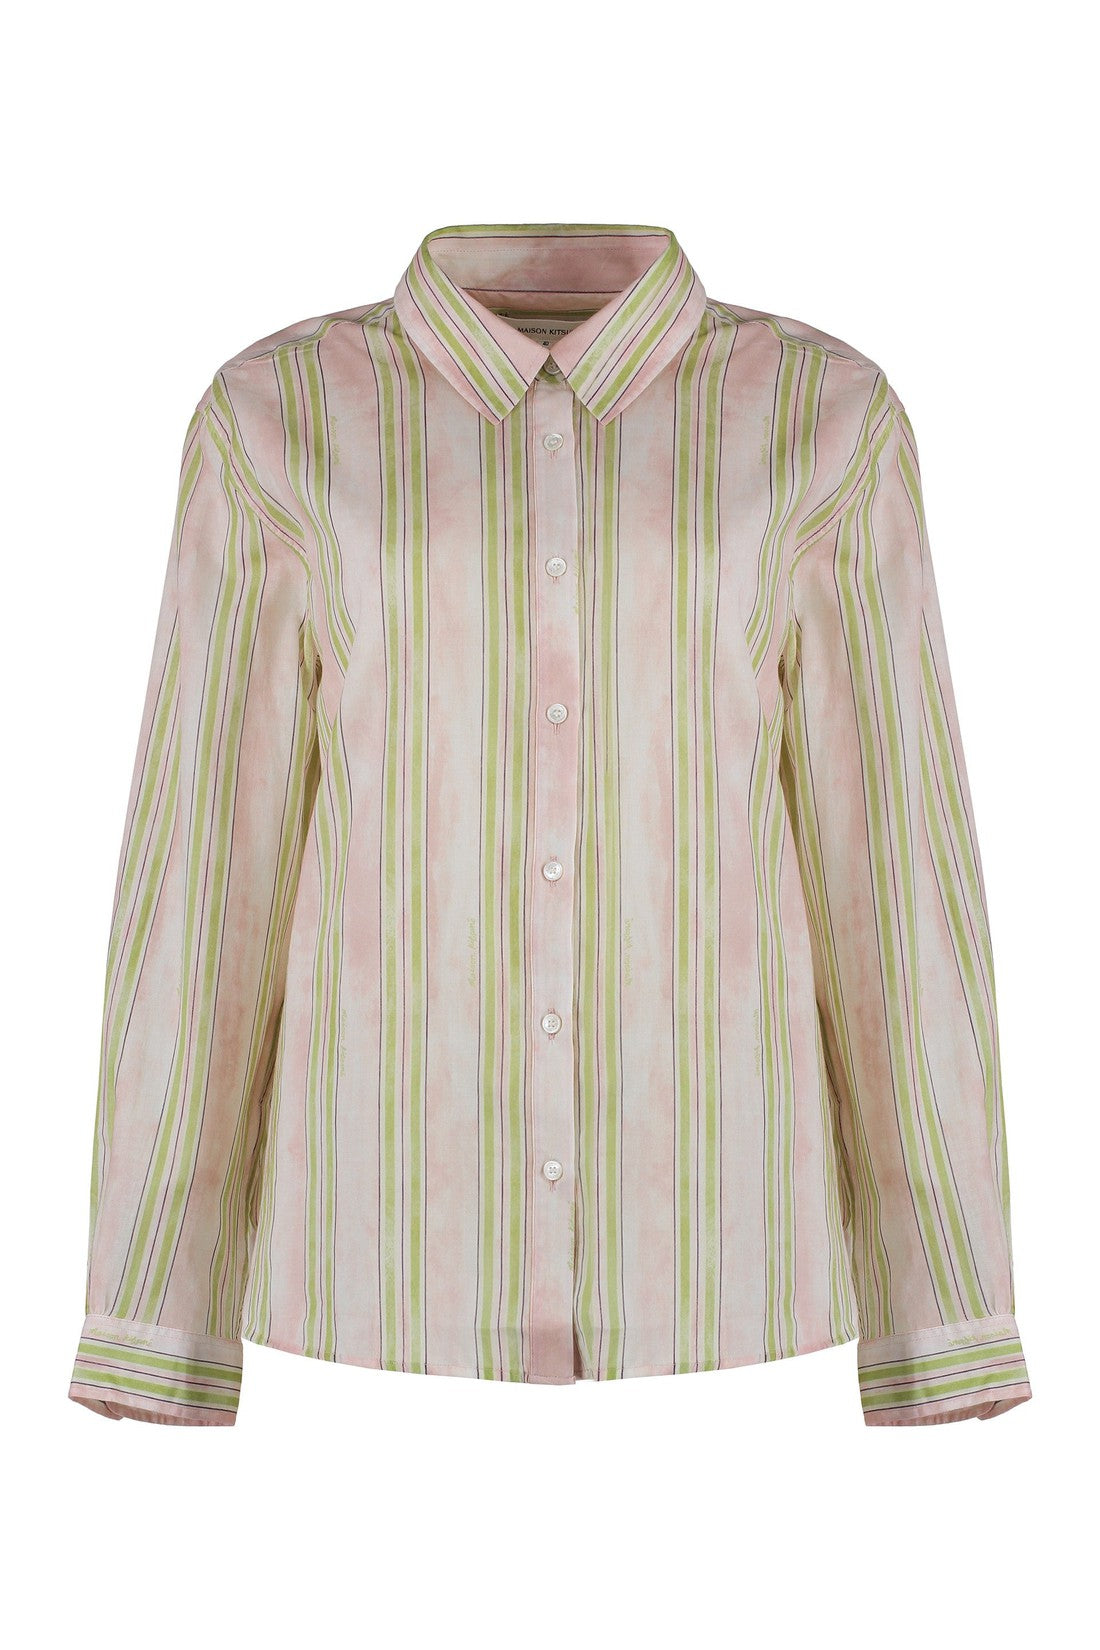 Maison Kitsuné-OUTLET-SALE-Striped cotton shirt-ARCHIVIST